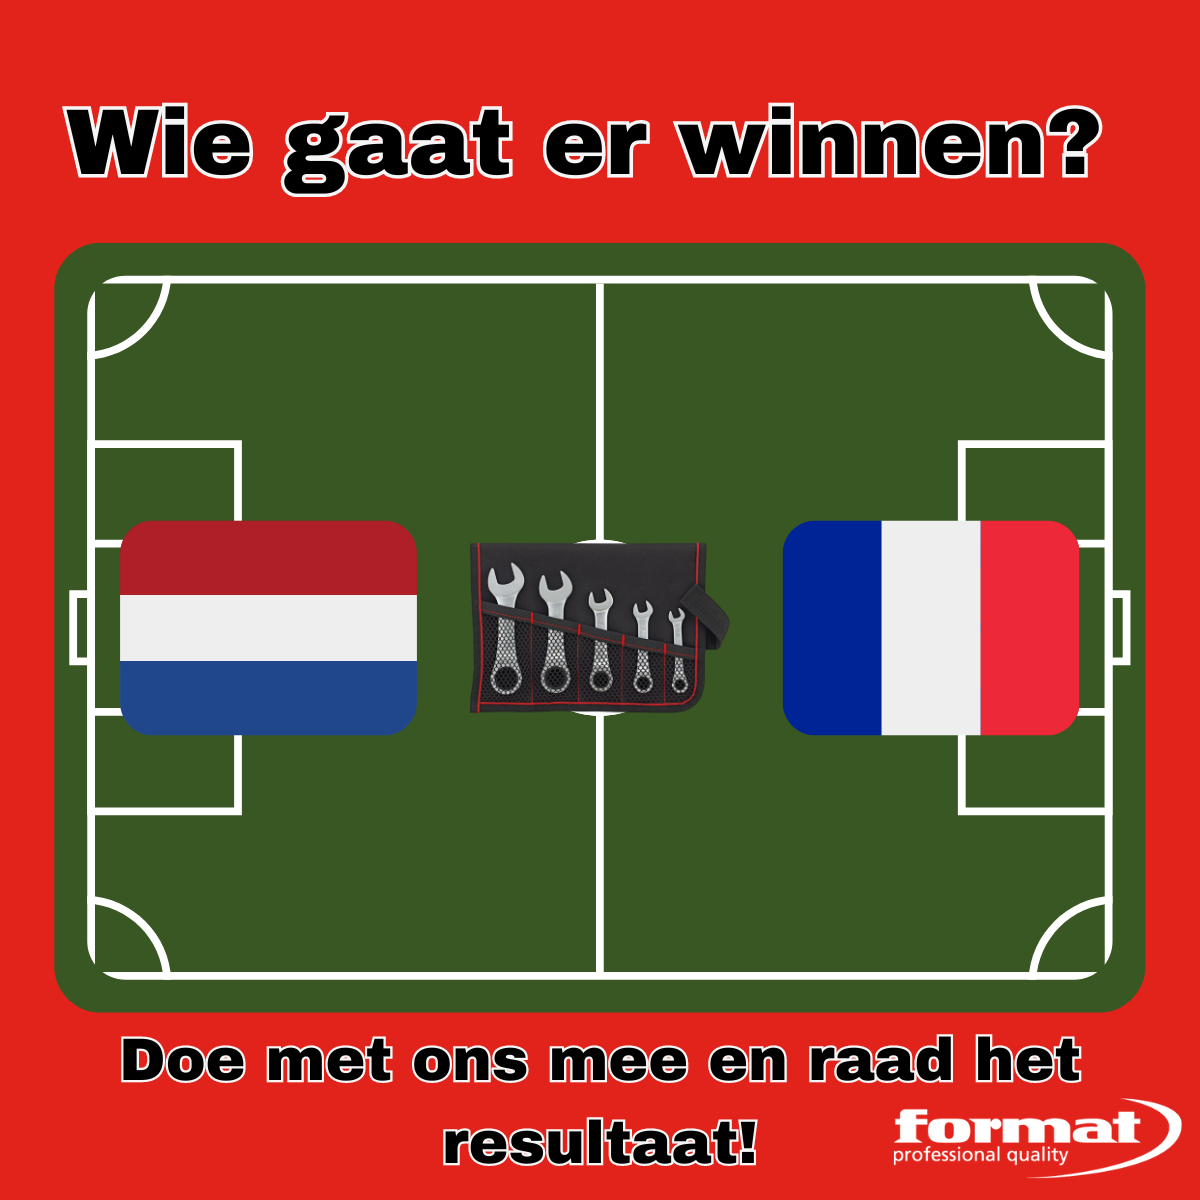 Wie wint de wedstrijd tussen Nederland en Frankrijk?